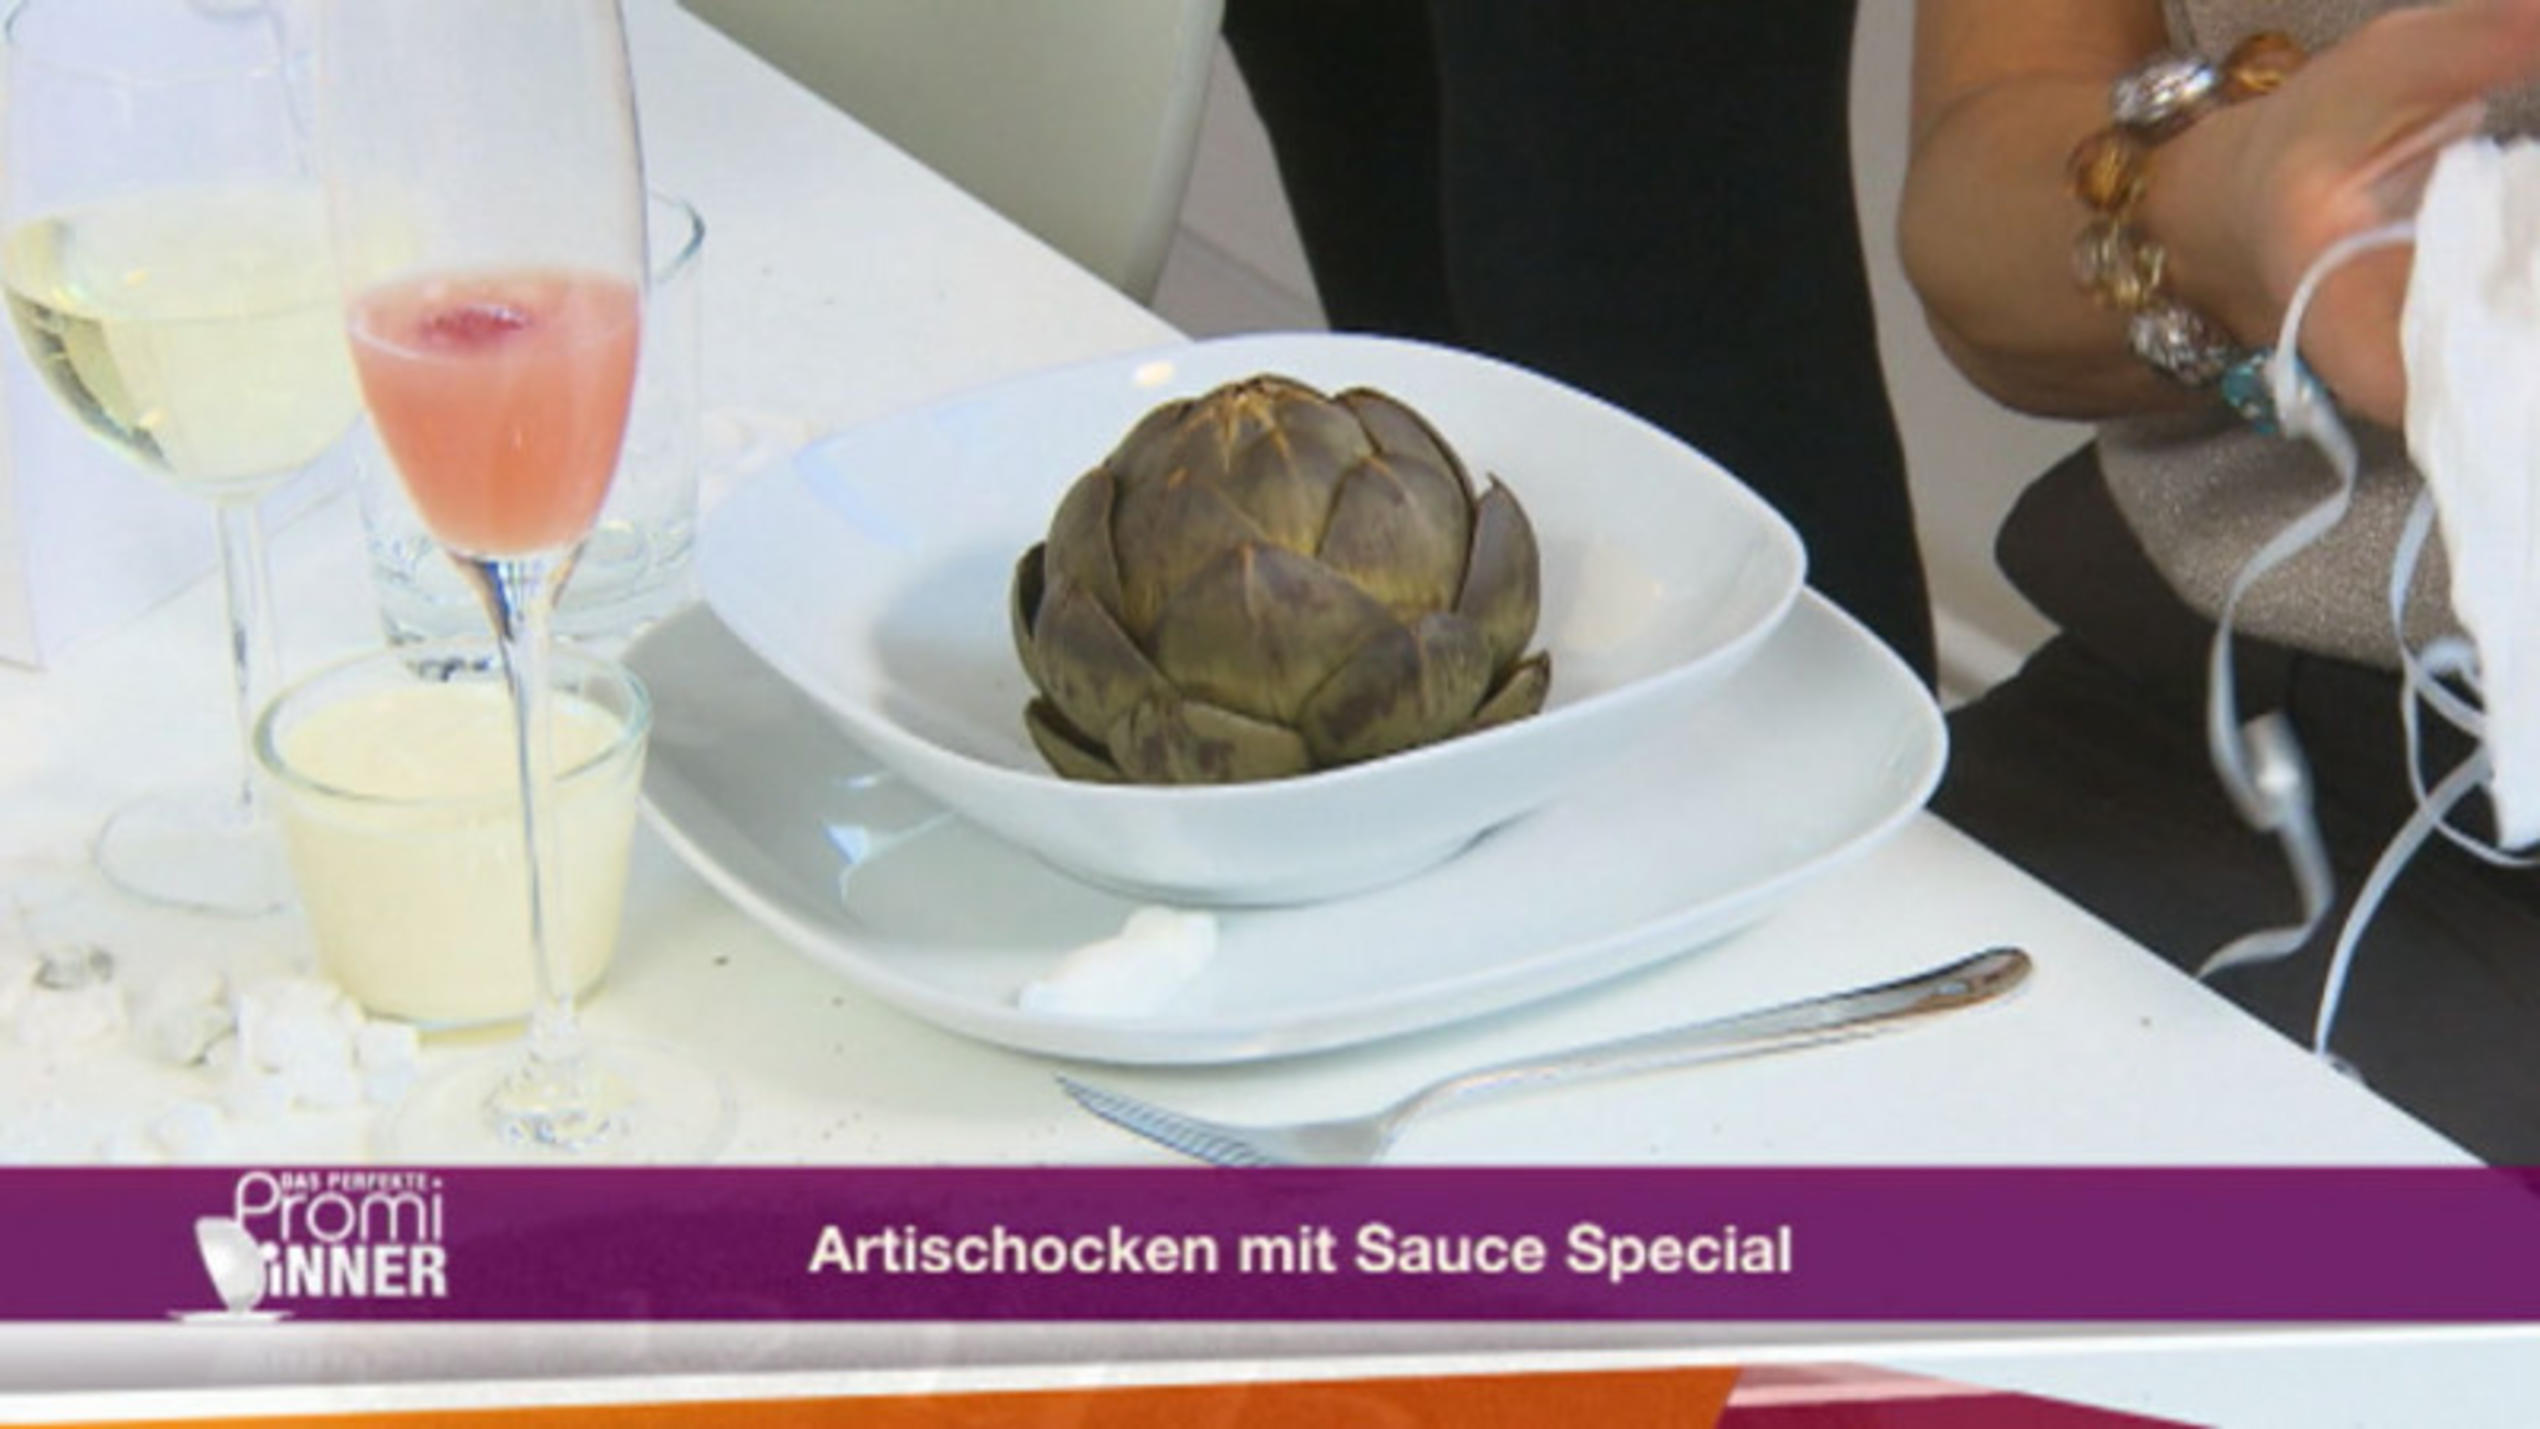 "Herzen unter Schock mit Soße Spezialo" – Artischocken mit Sauce Special